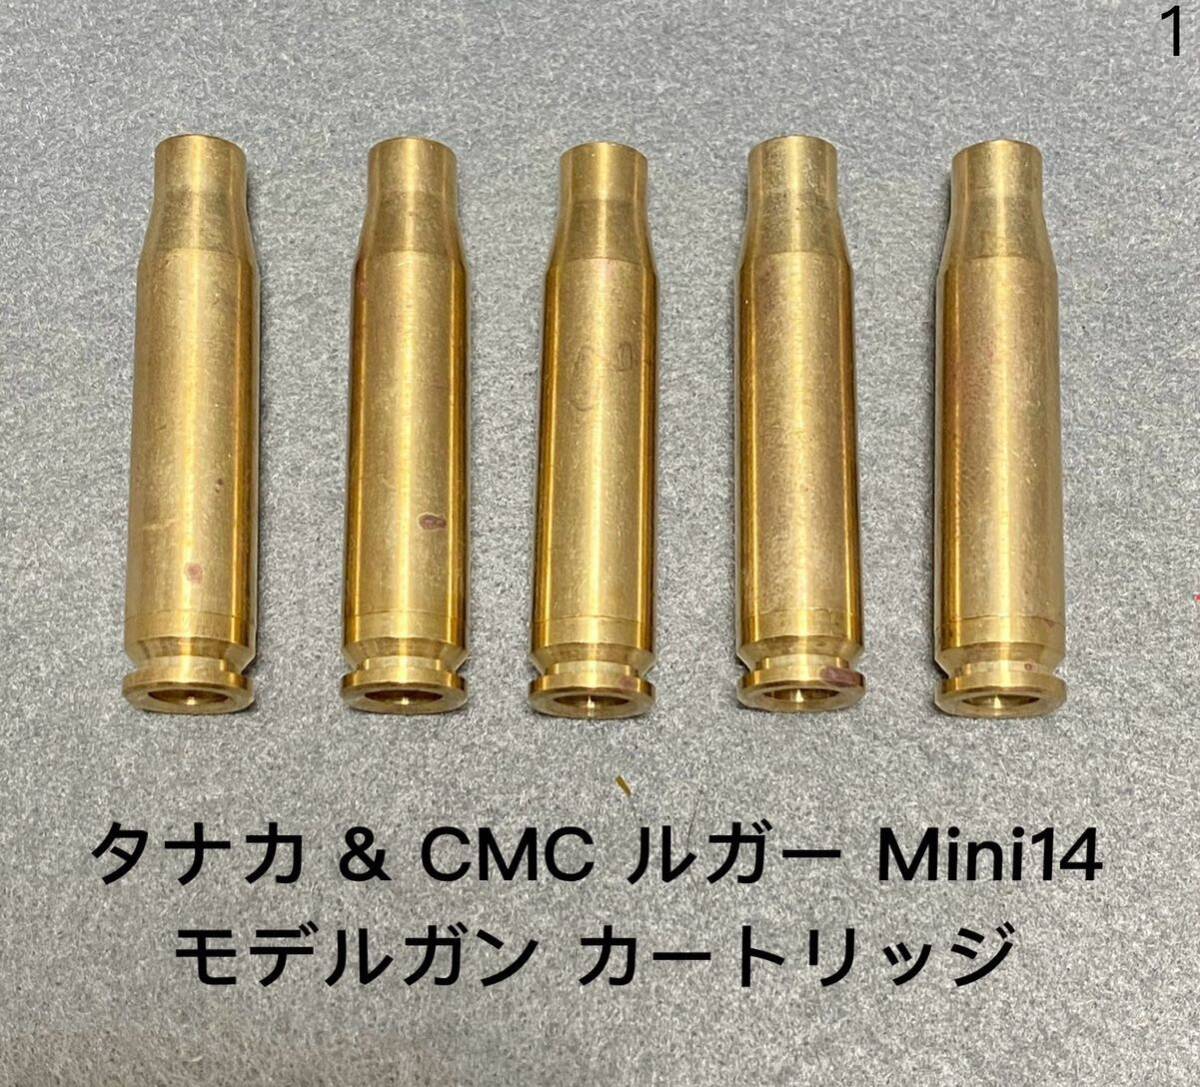 送料無料 5発 未発火 タナカ & 東京 CMC ルガー Mini14 ミニ14 モデルガン 発火式 カートリッジ カート ライフル SMG tanaka RUGER RIFLE 1_画像1